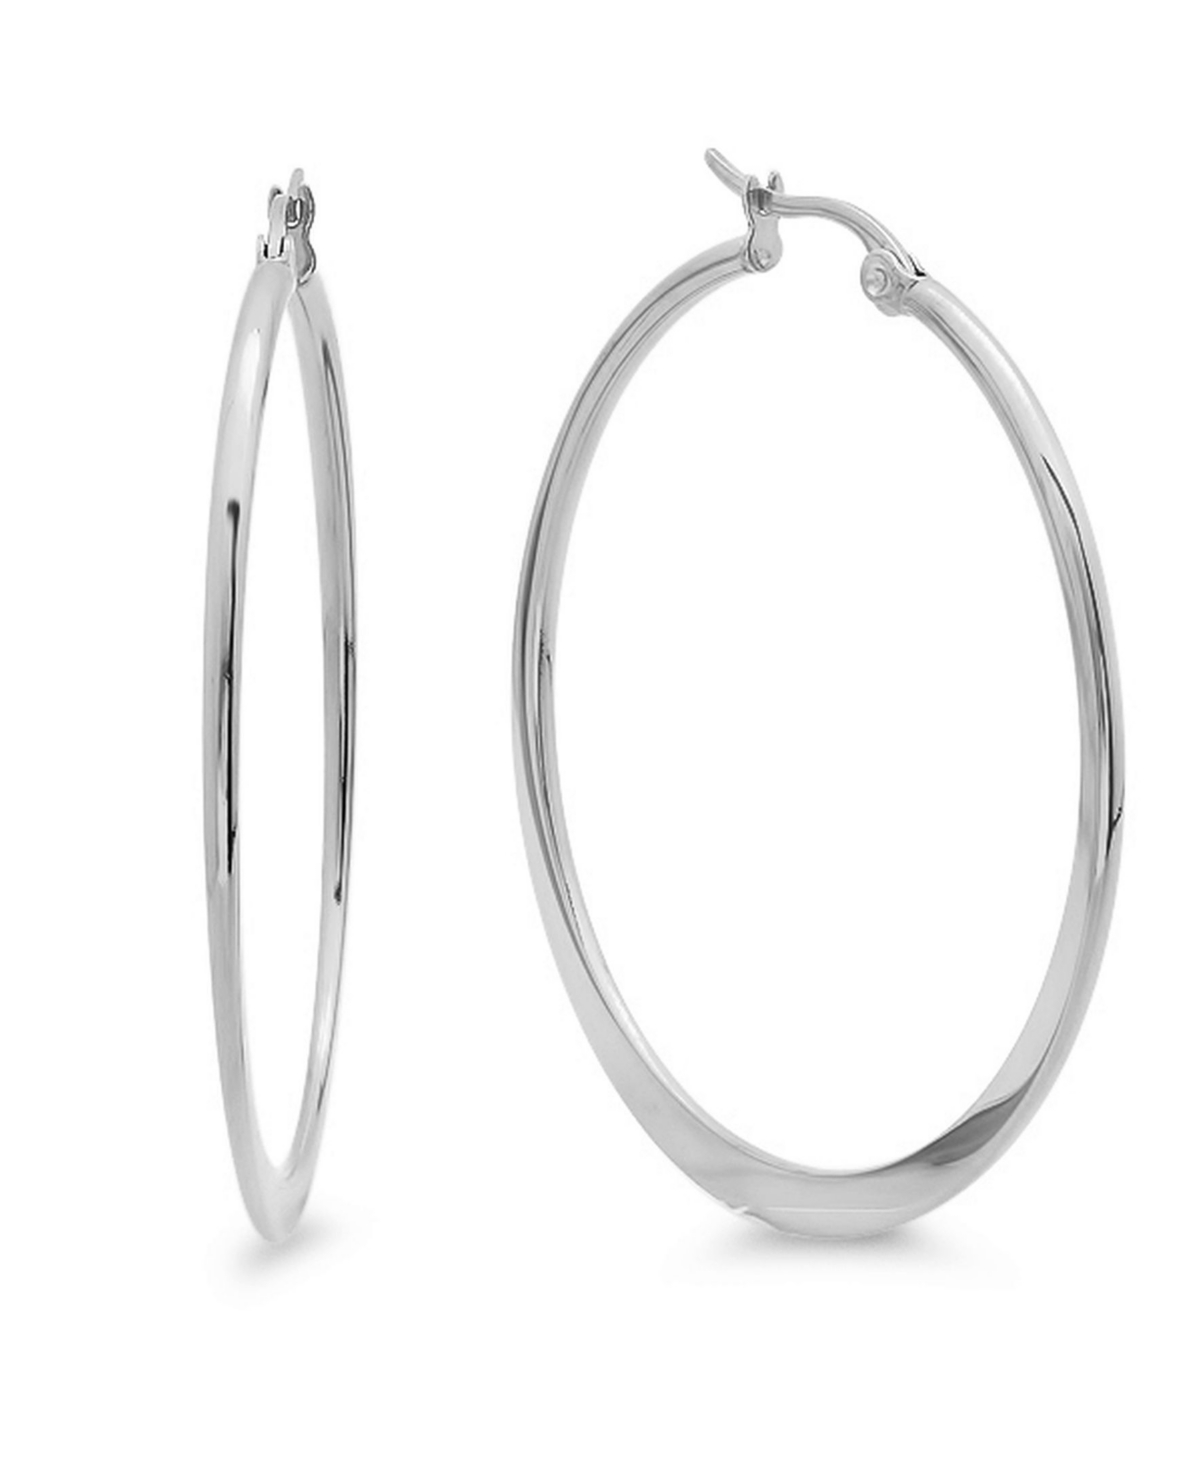 Stainless Steel Hoop Earrings - Silver-Plated